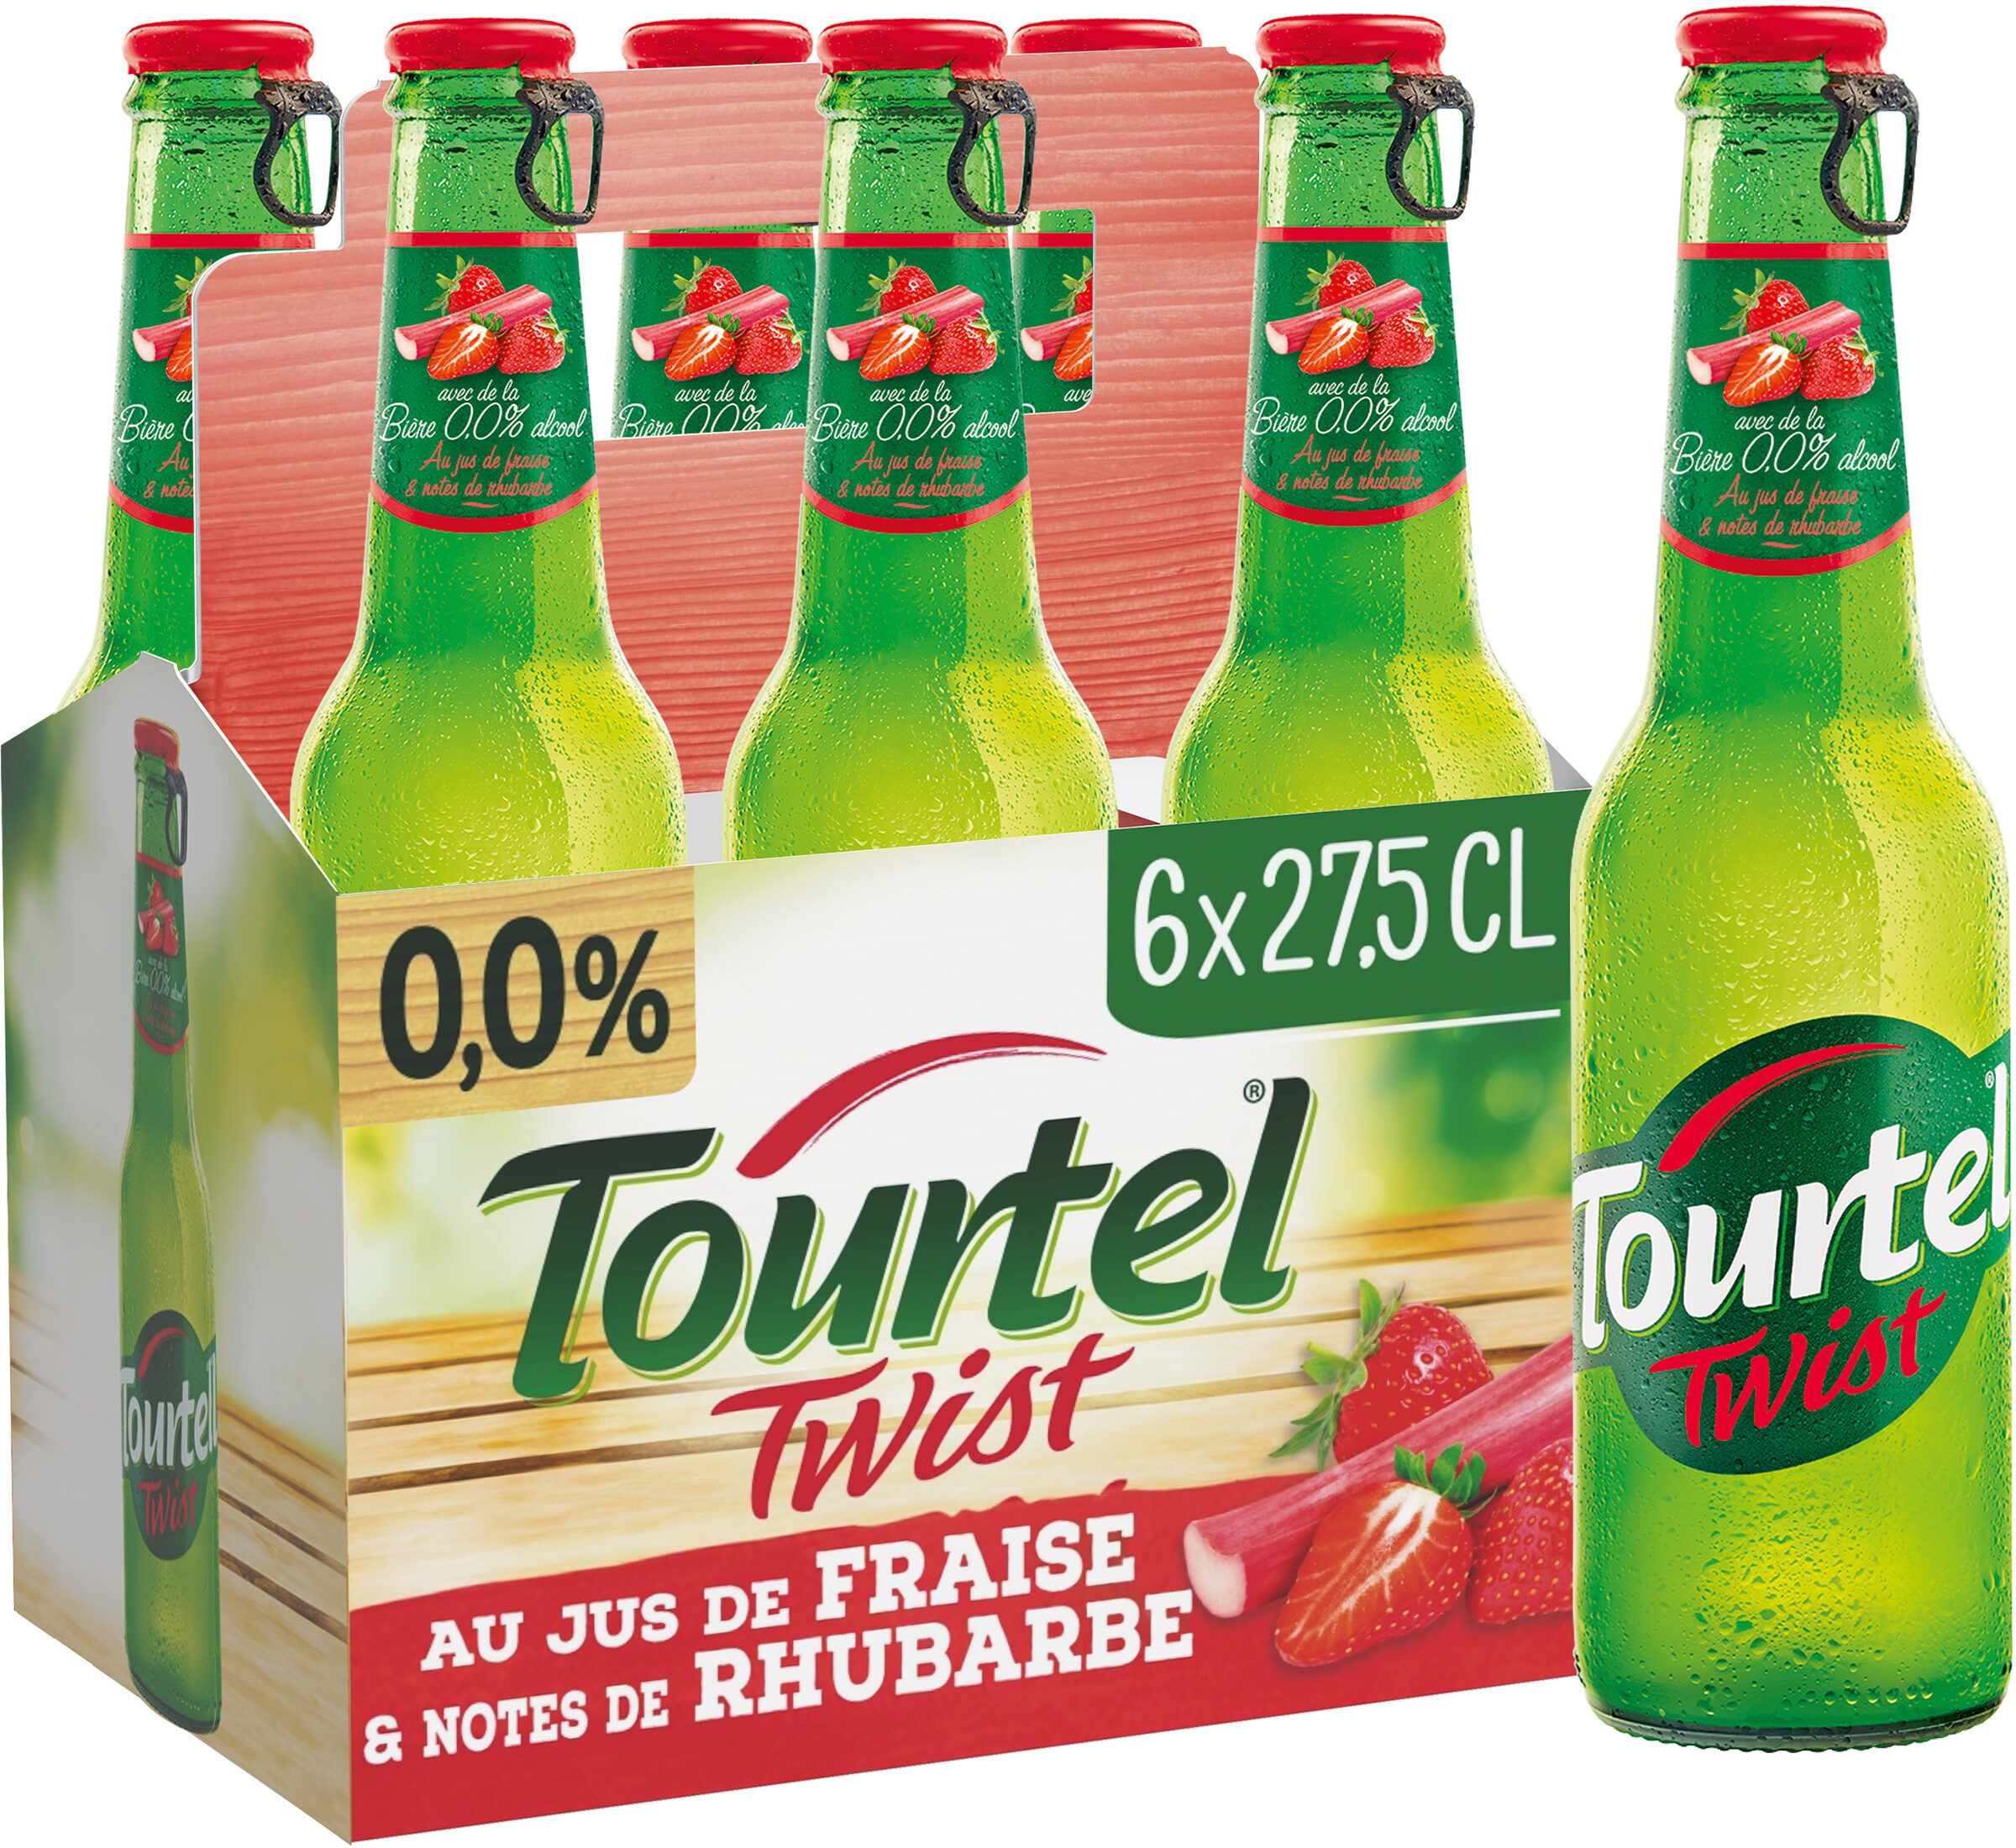 Tourtel 6X27,5CL TOURTEL TWIST FRAISE RHUBA 0.0 DEGRE ALCOOL - Produit